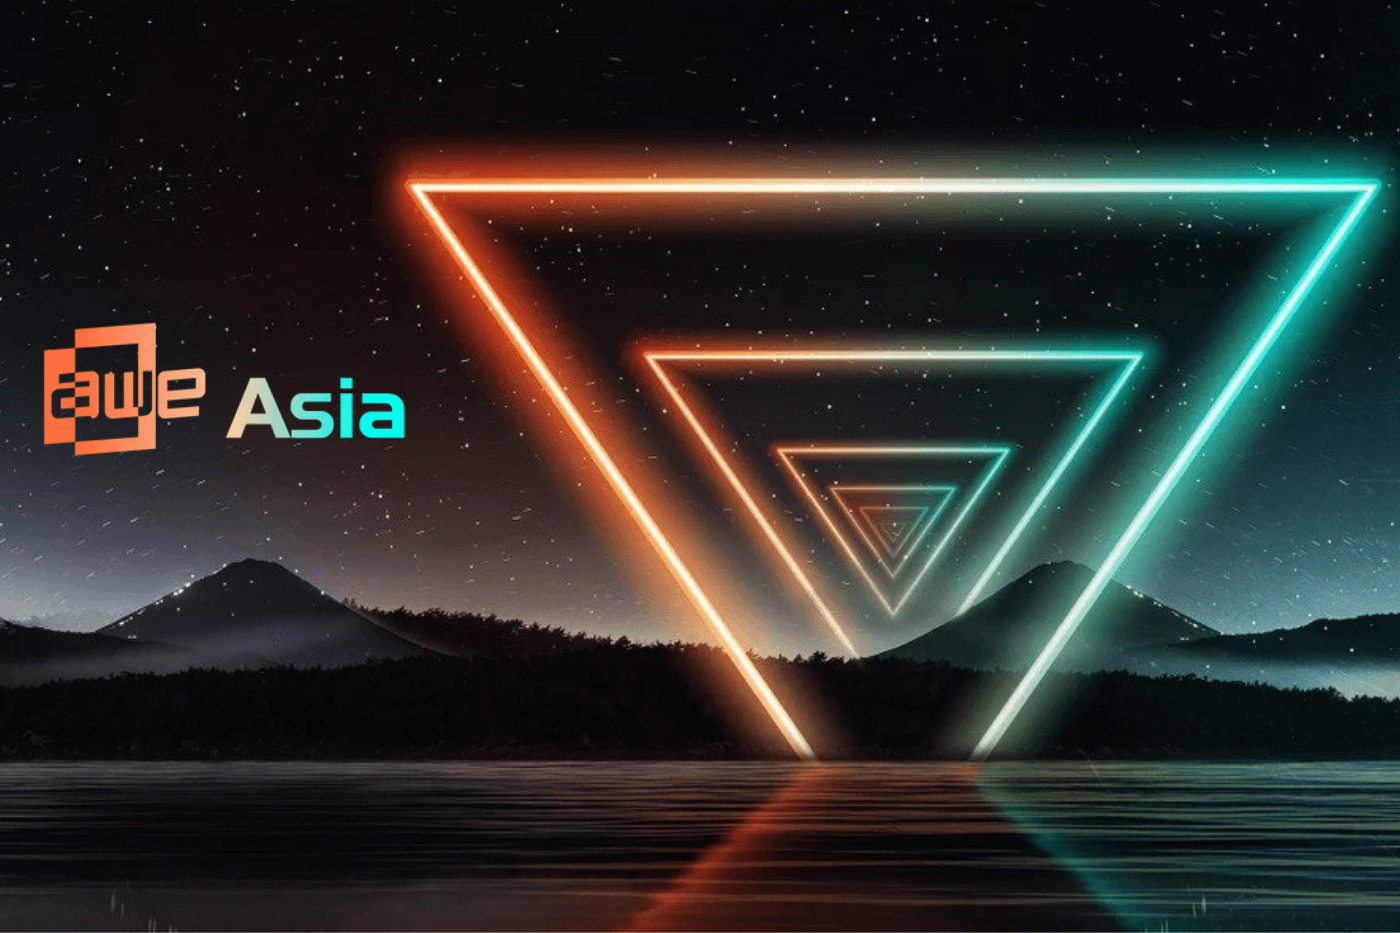 AWE Asia 2021